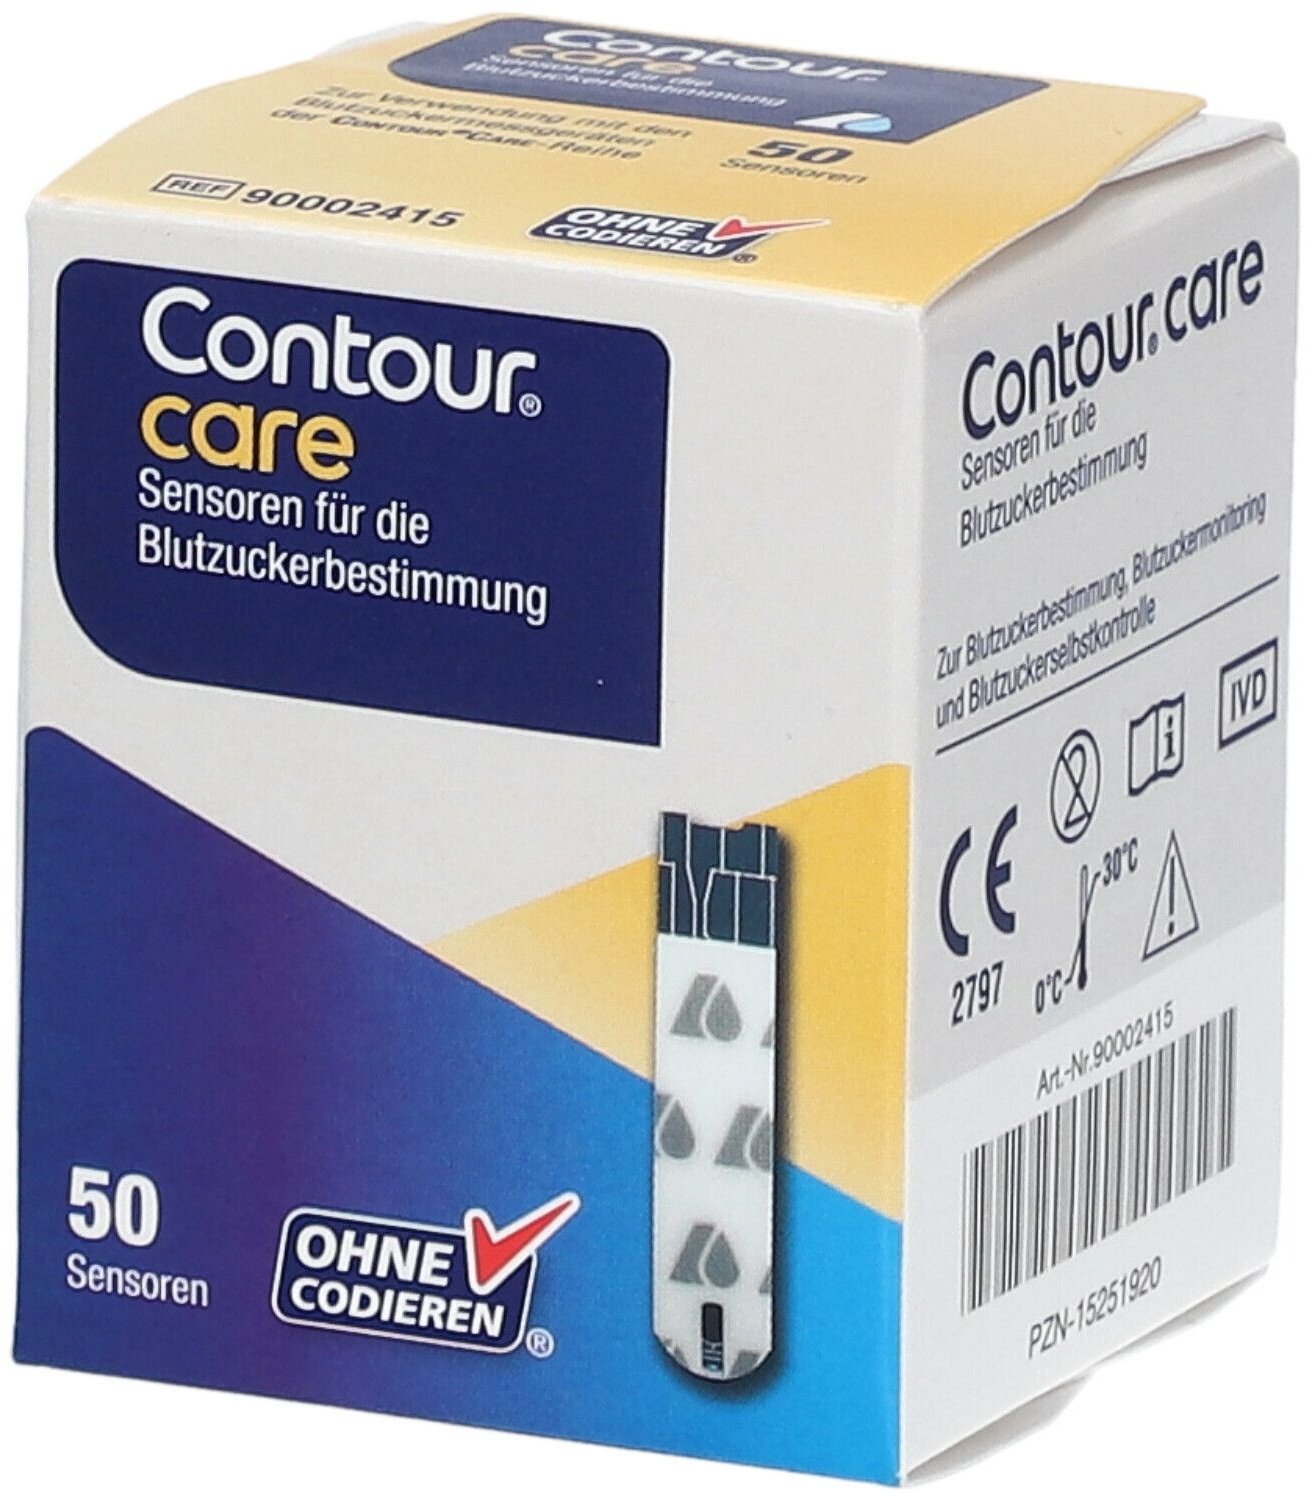 Contour ® Care Sensoren